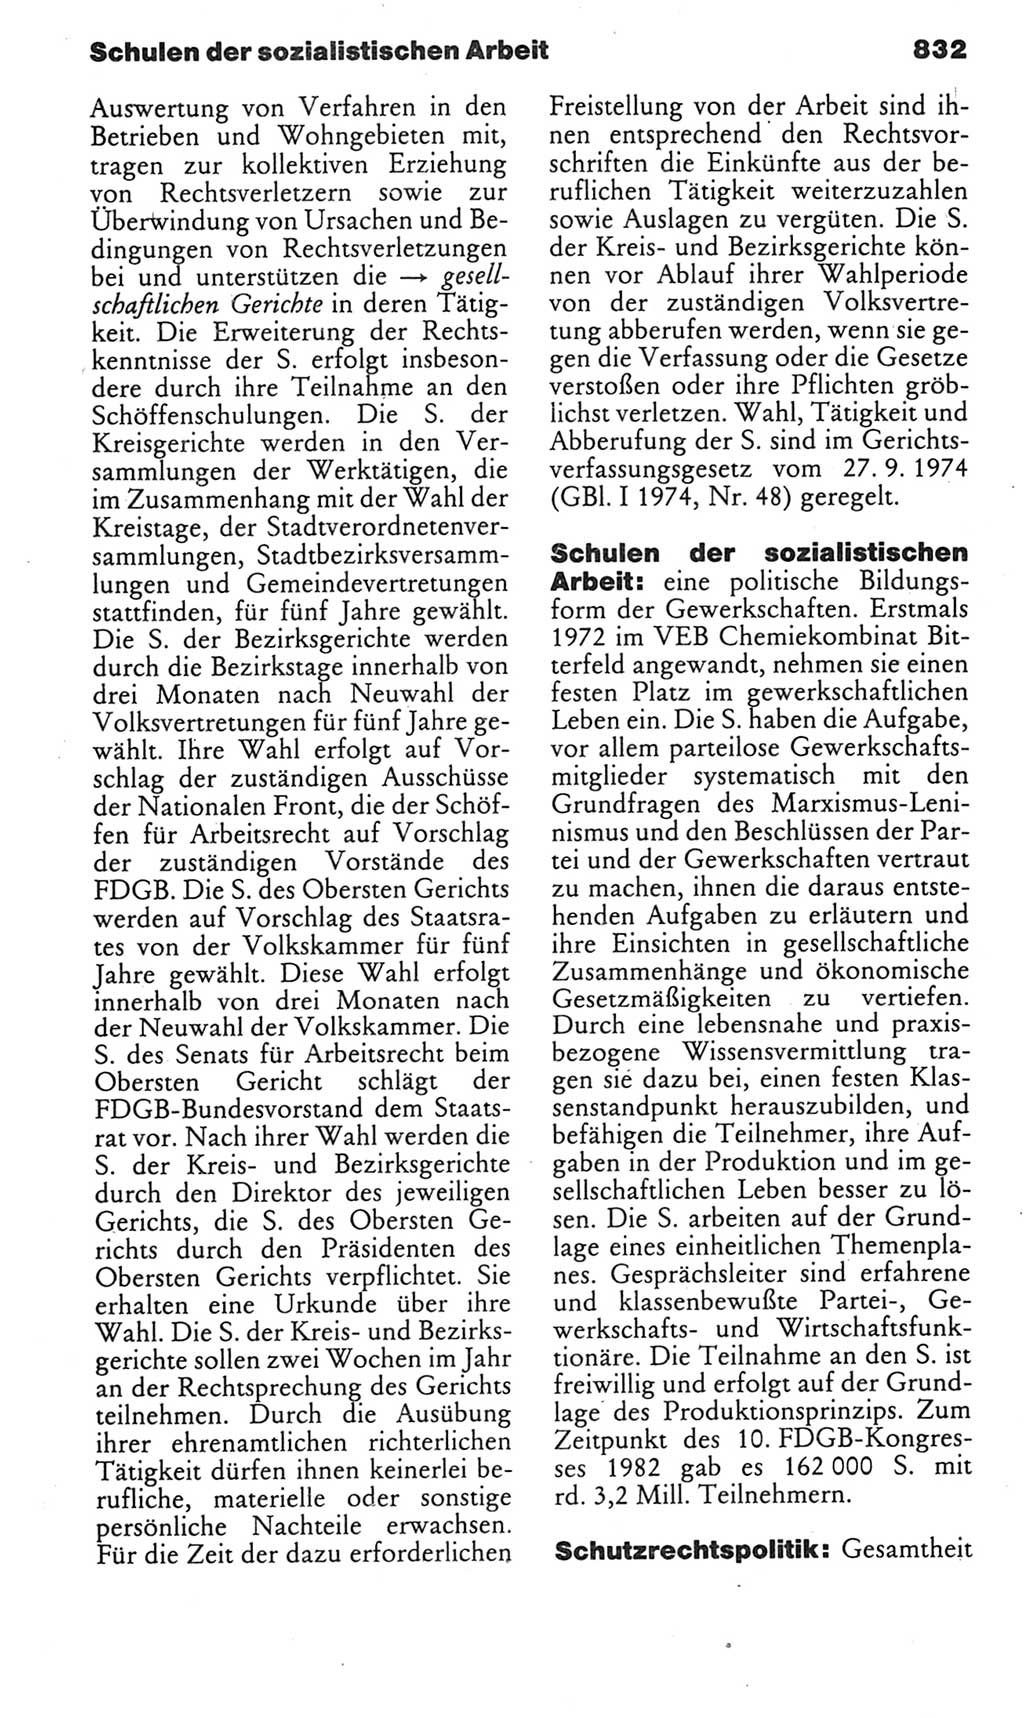 Kleines politisches Wörterbuch [Deutsche Demokratische Republik (DDR)] 1985, Seite 832 (Kl. pol. Wb. DDR 1985, S. 832)